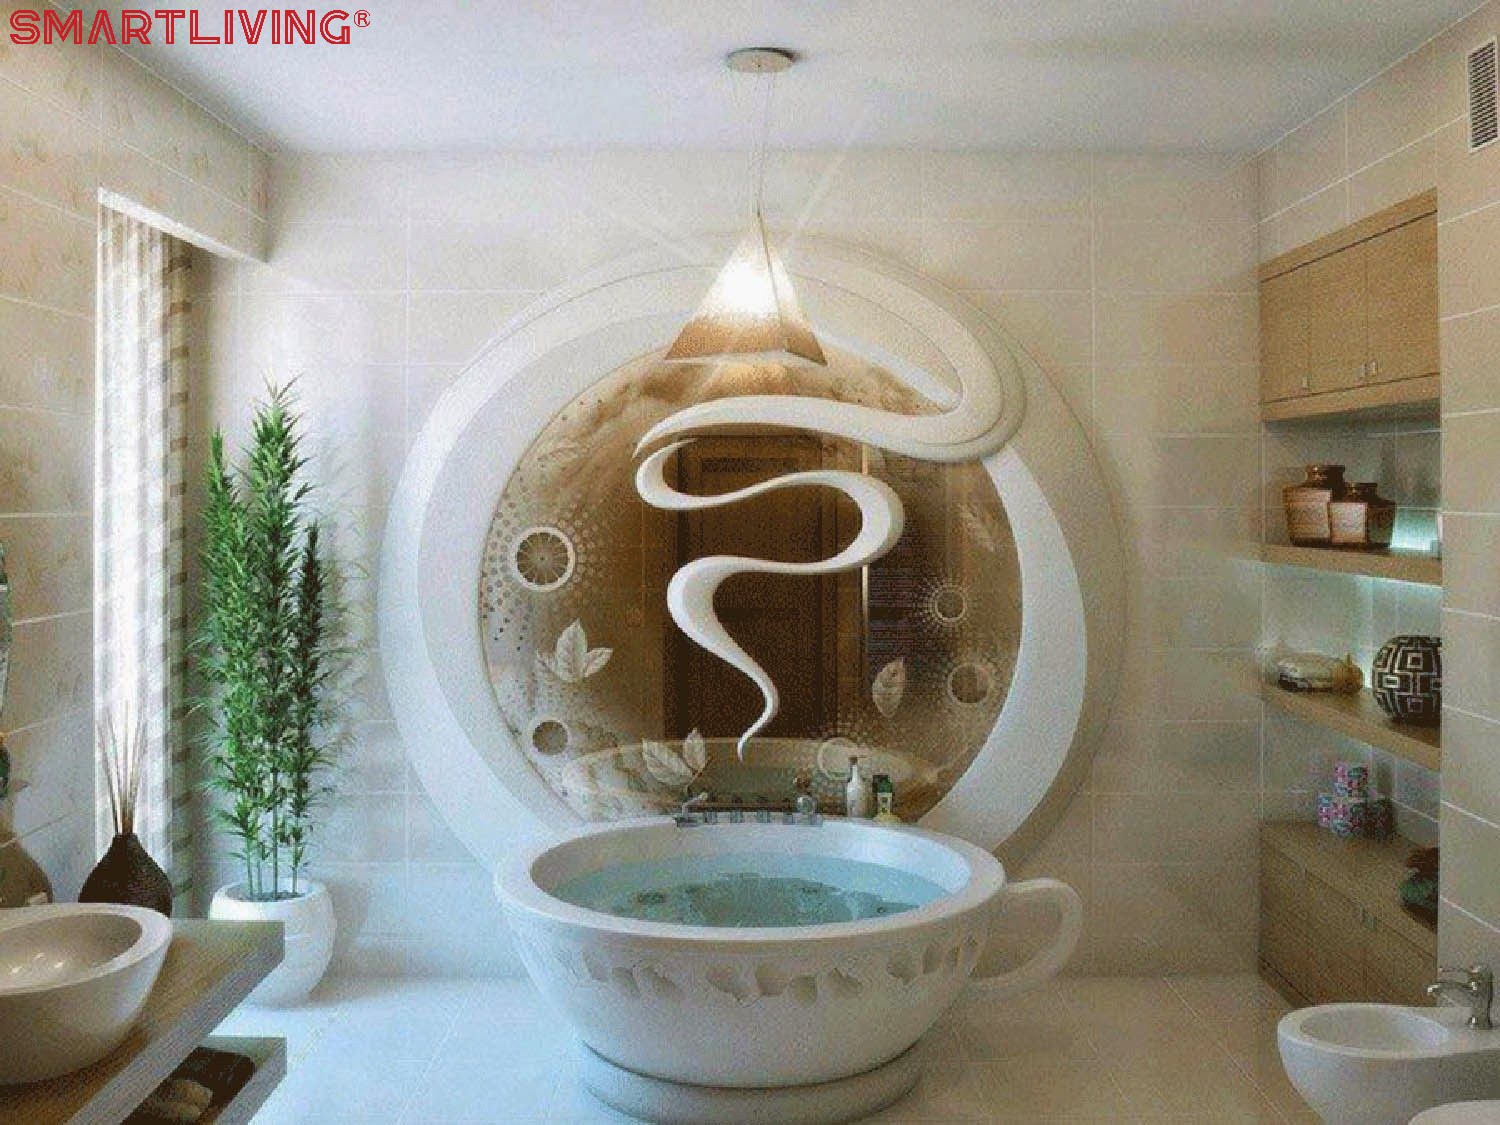 Lấy cảm hứng từ cốc trà, thiết kế nhà tắm kiểu này phải nói là độc nhất vô nhị. Ngoài bồn tắm, sự kết hợp cũng các thiết bị và cách bài trí khác cũng tạo nên cảm giác như một nhà tắm chỉ có trong phim ảnh